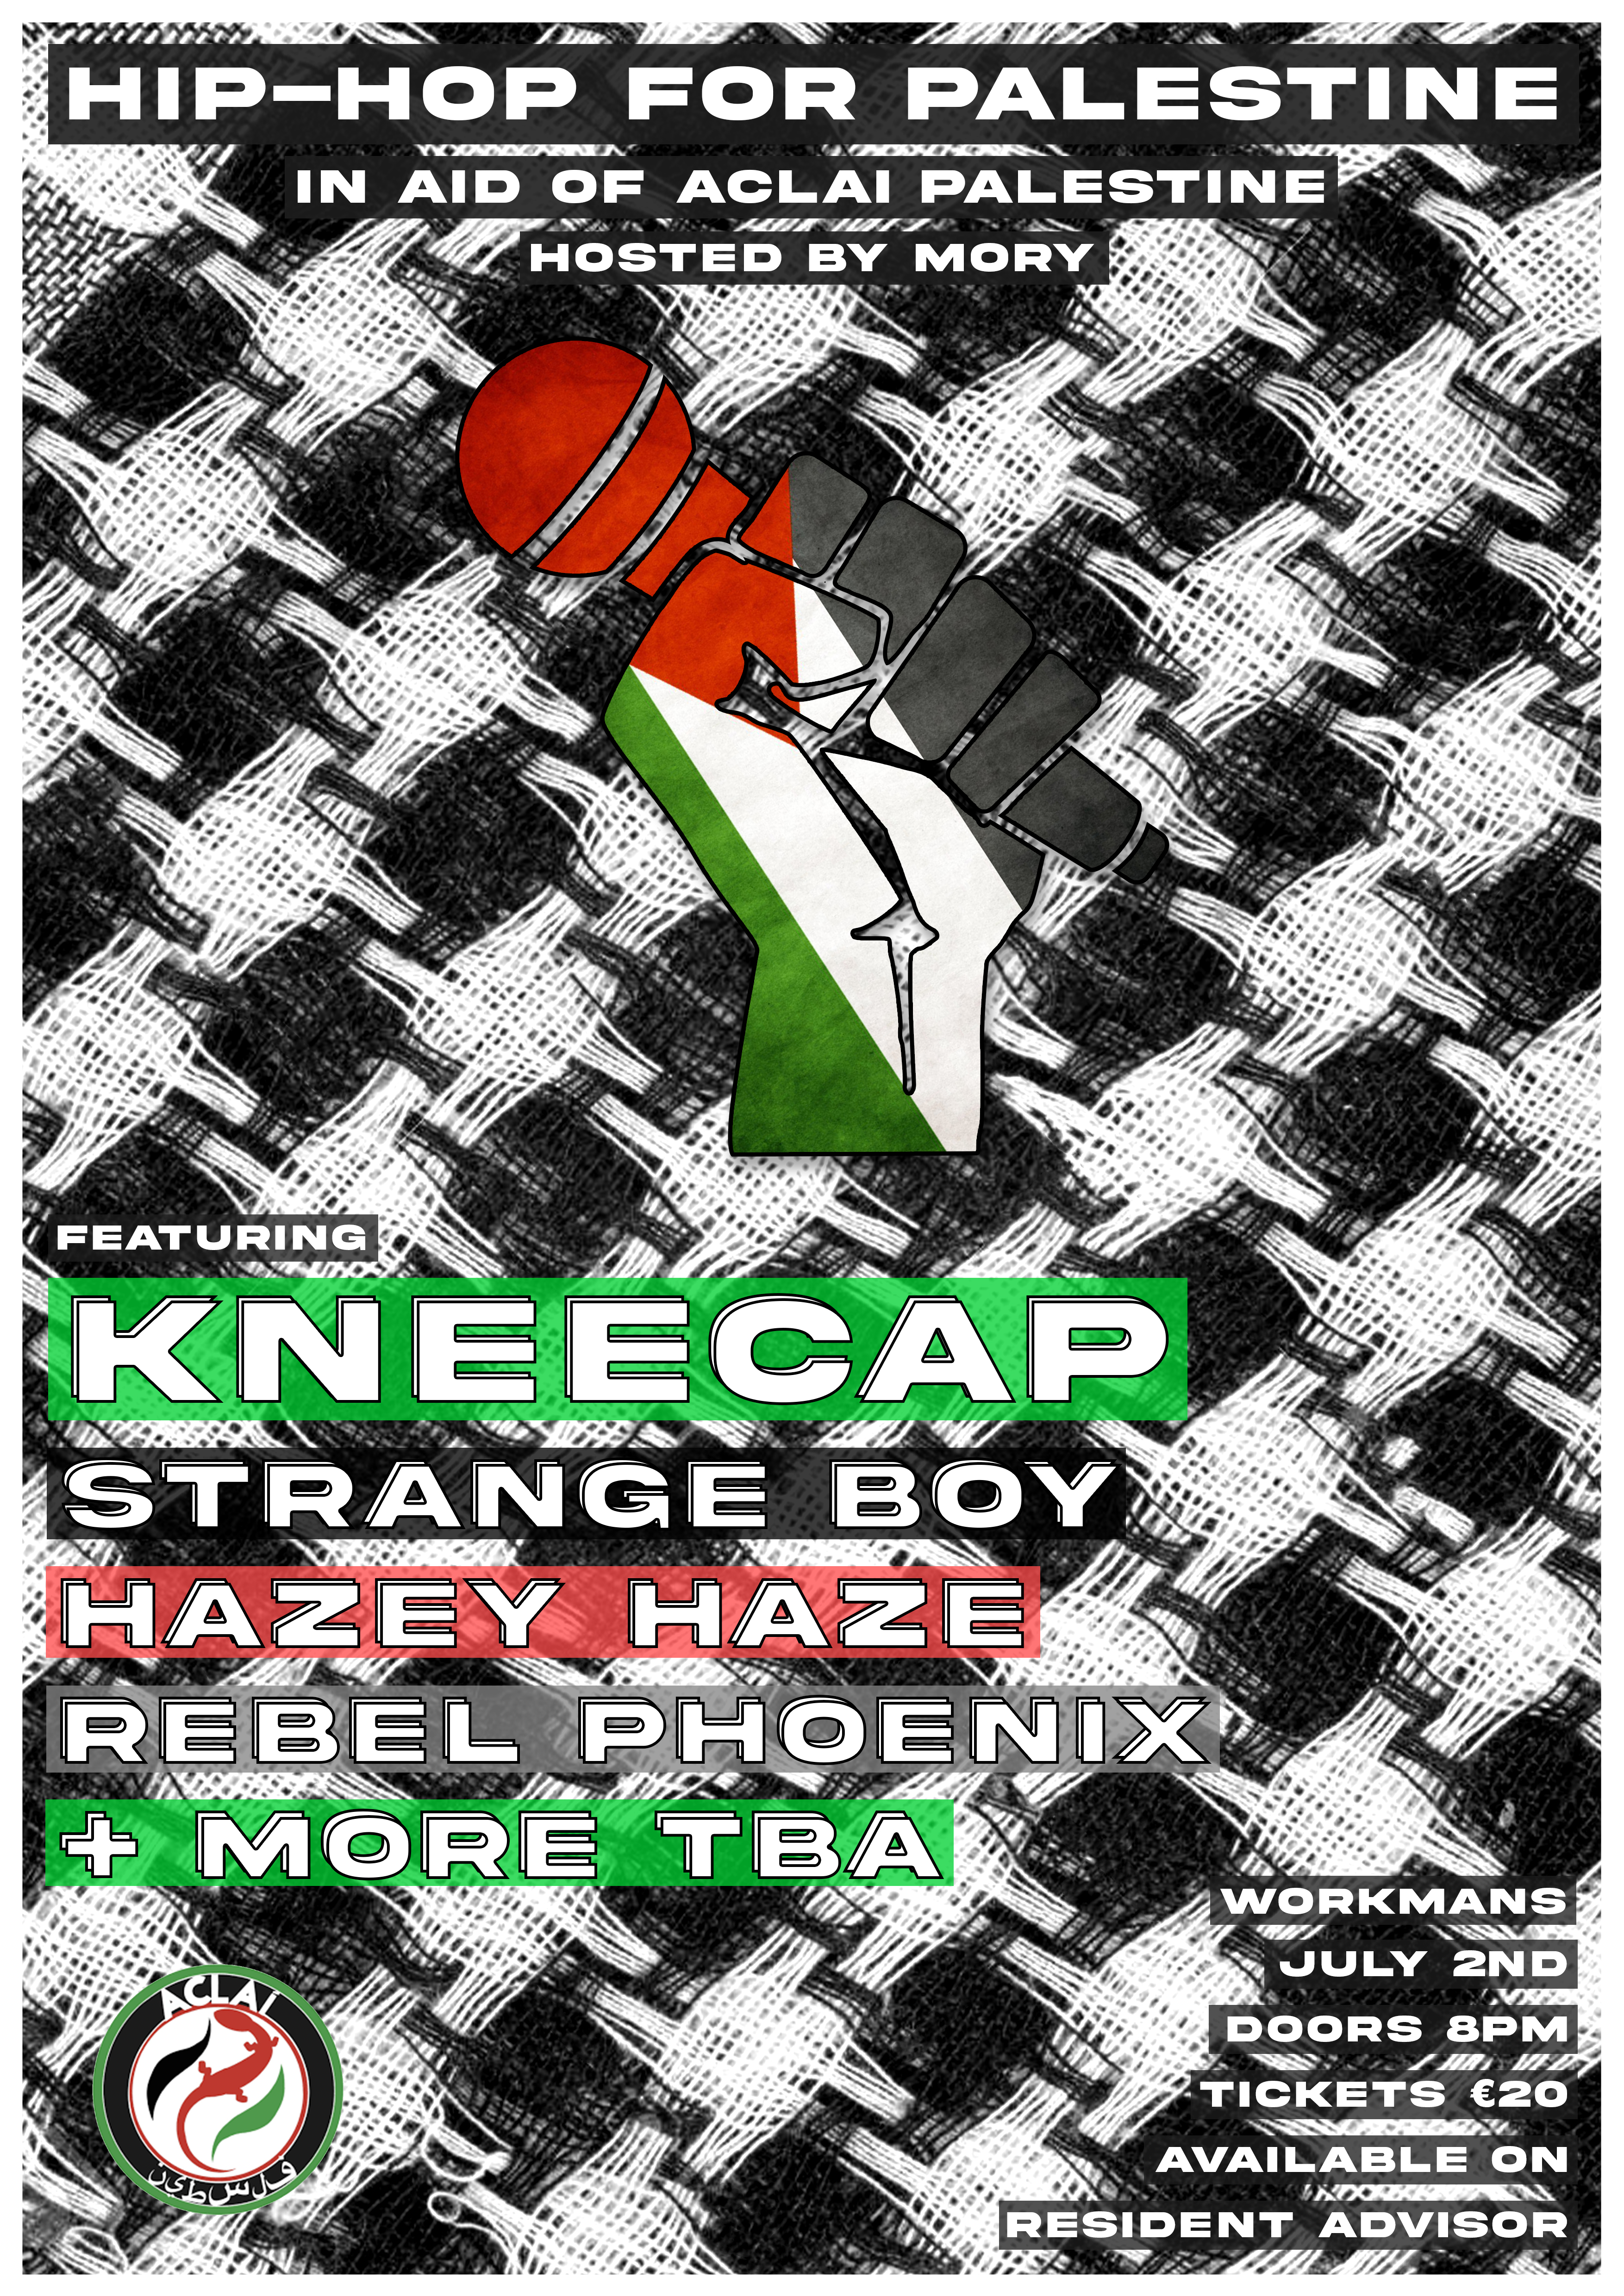 Hip-Hop for Palestine - Flyer front